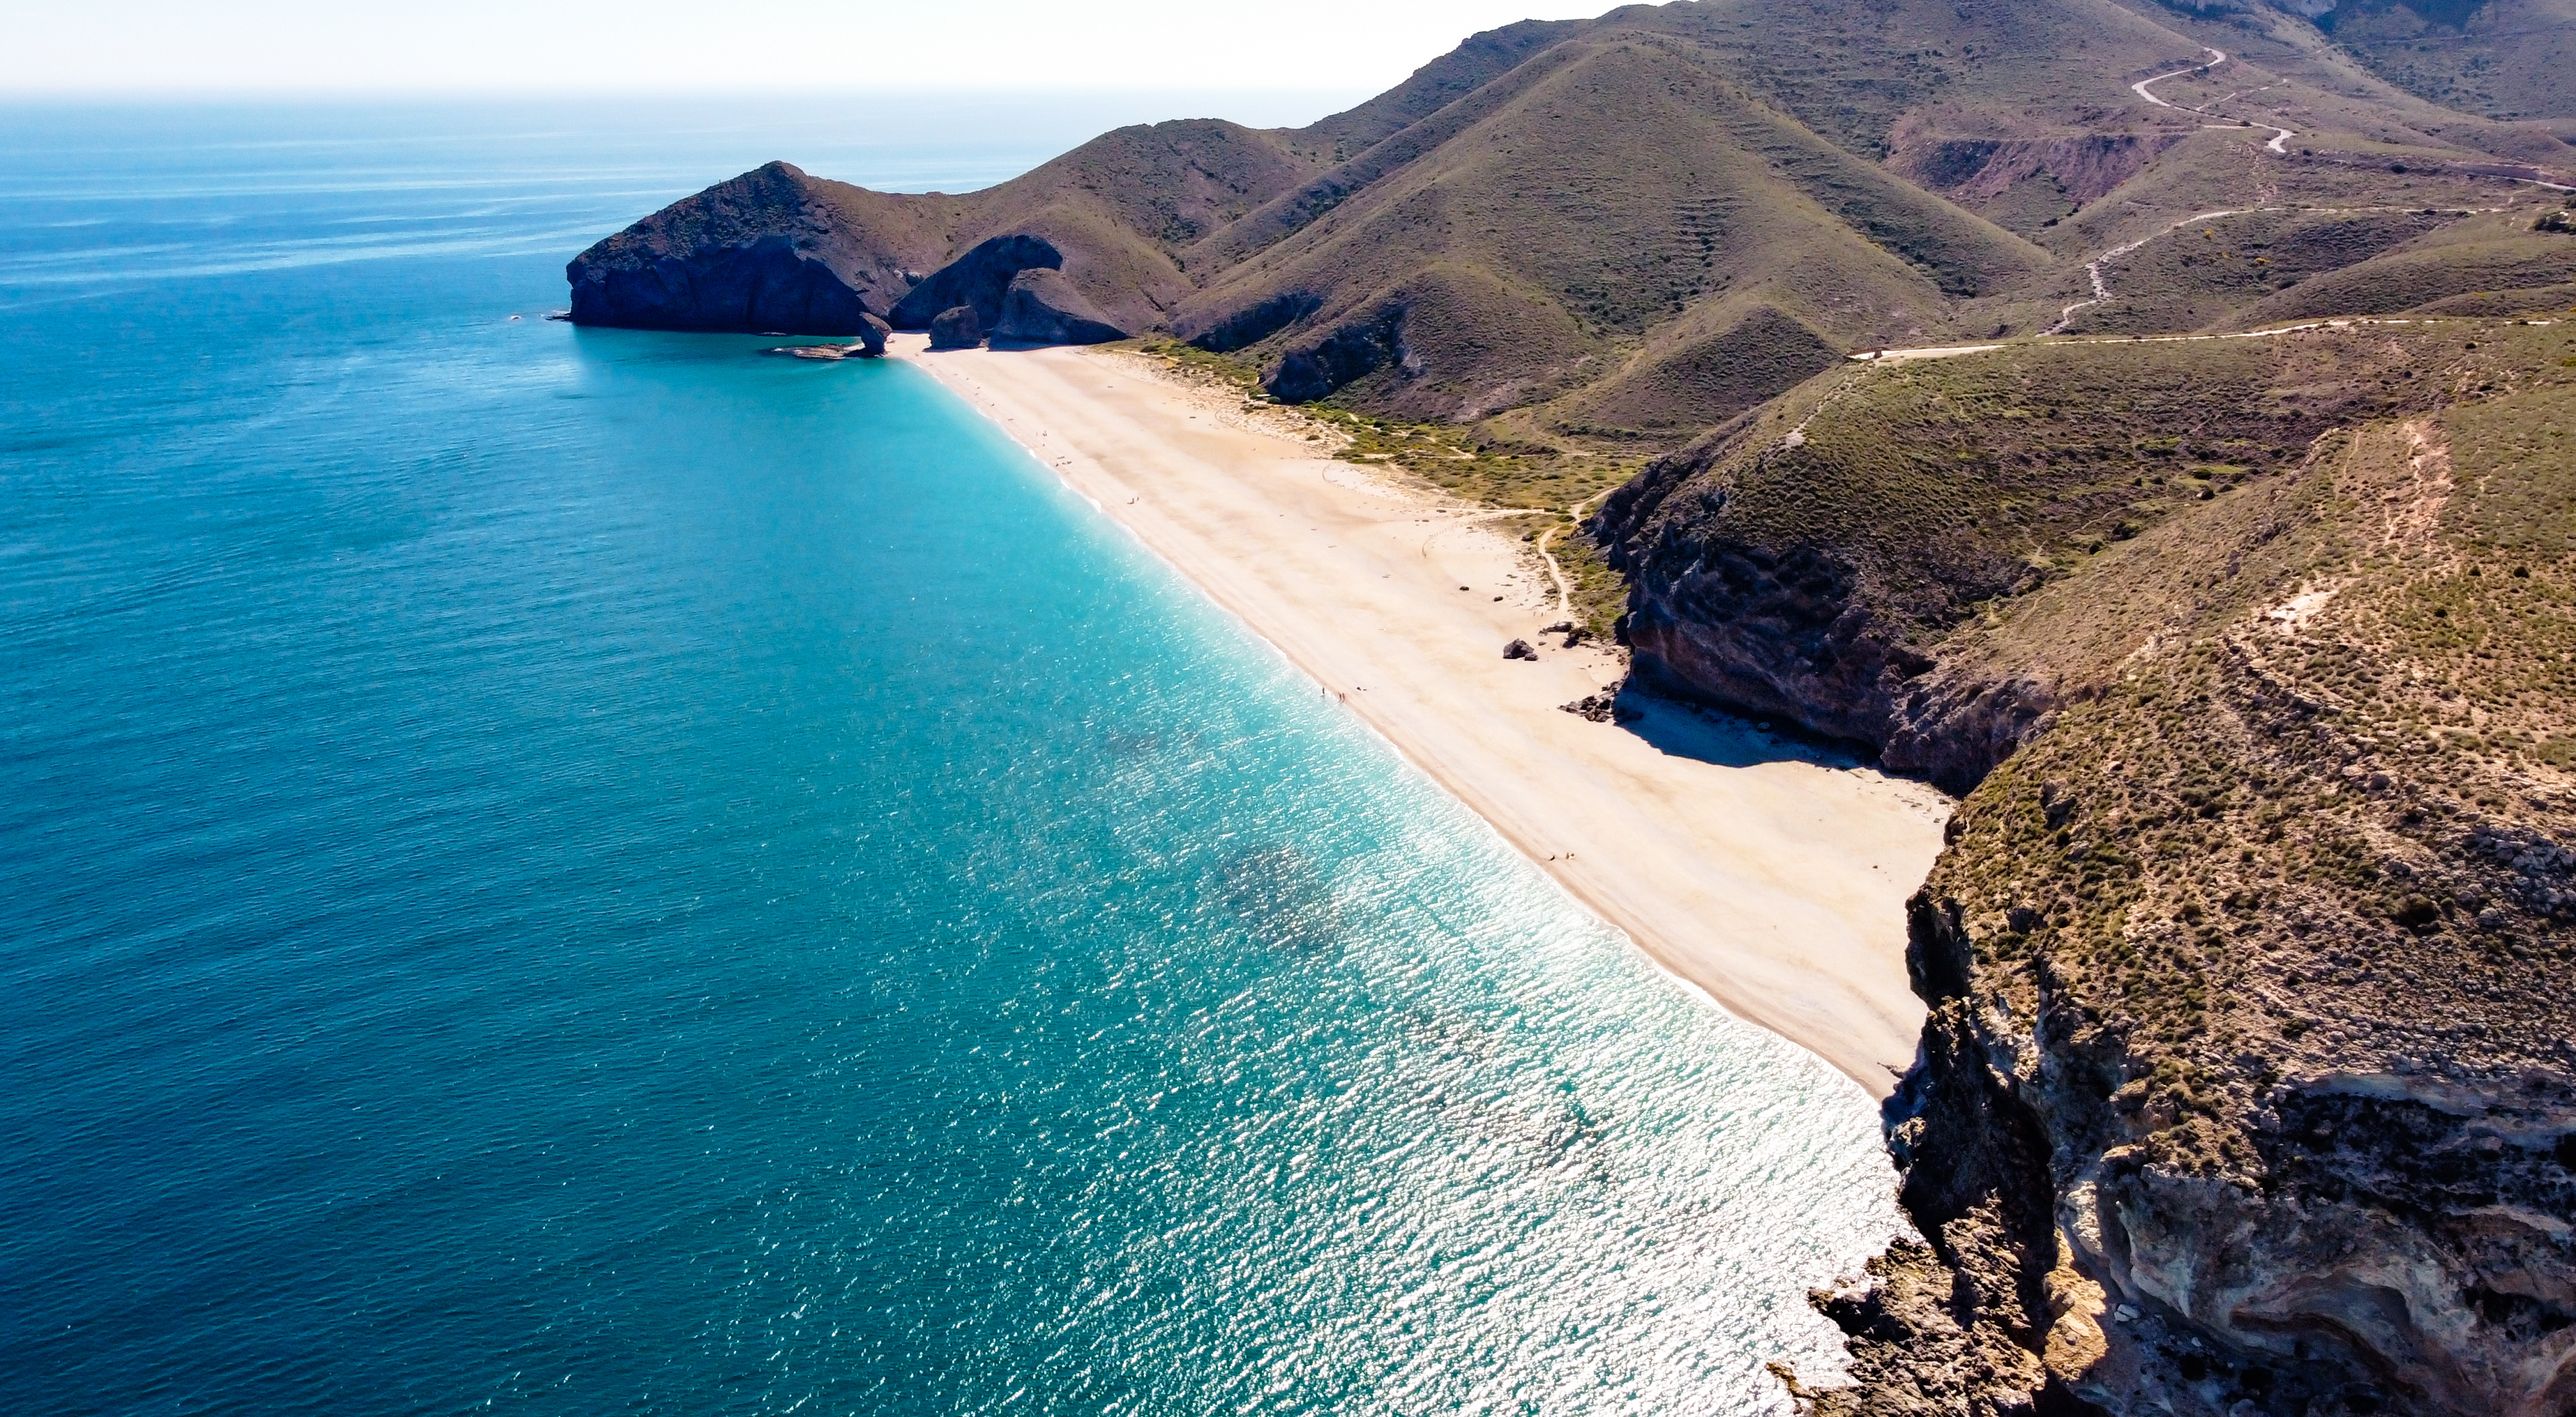 Playa-de-los-muertos-Almeria-Andalucia-cosat-paisaje-mar